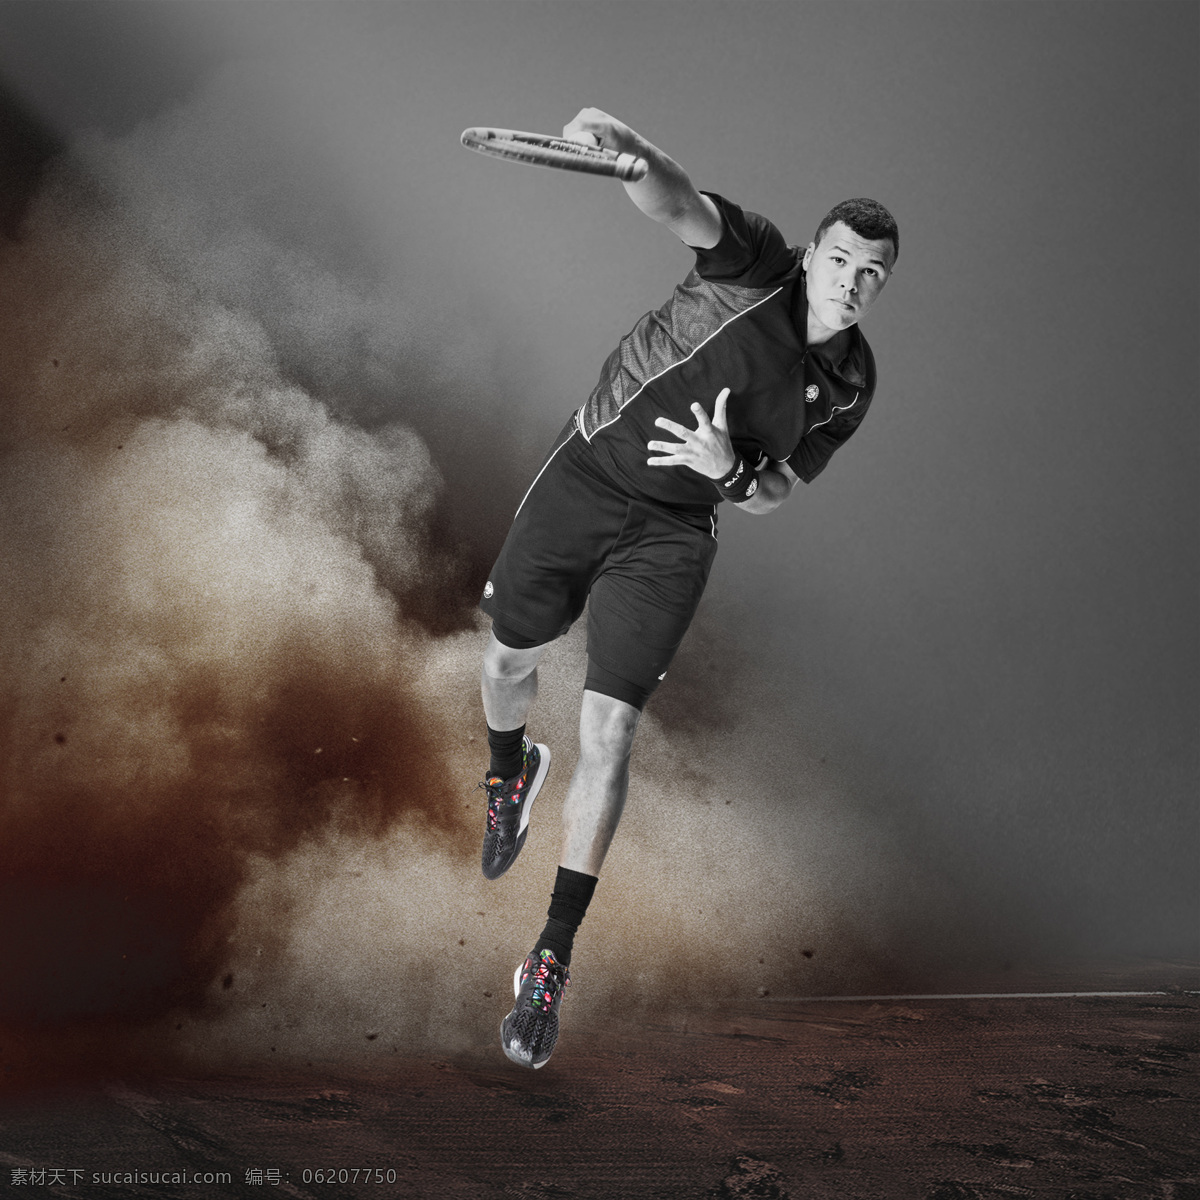 网球运动装备 adidas 网球 运动 装备 宣传 广告 生活百科 体育用品